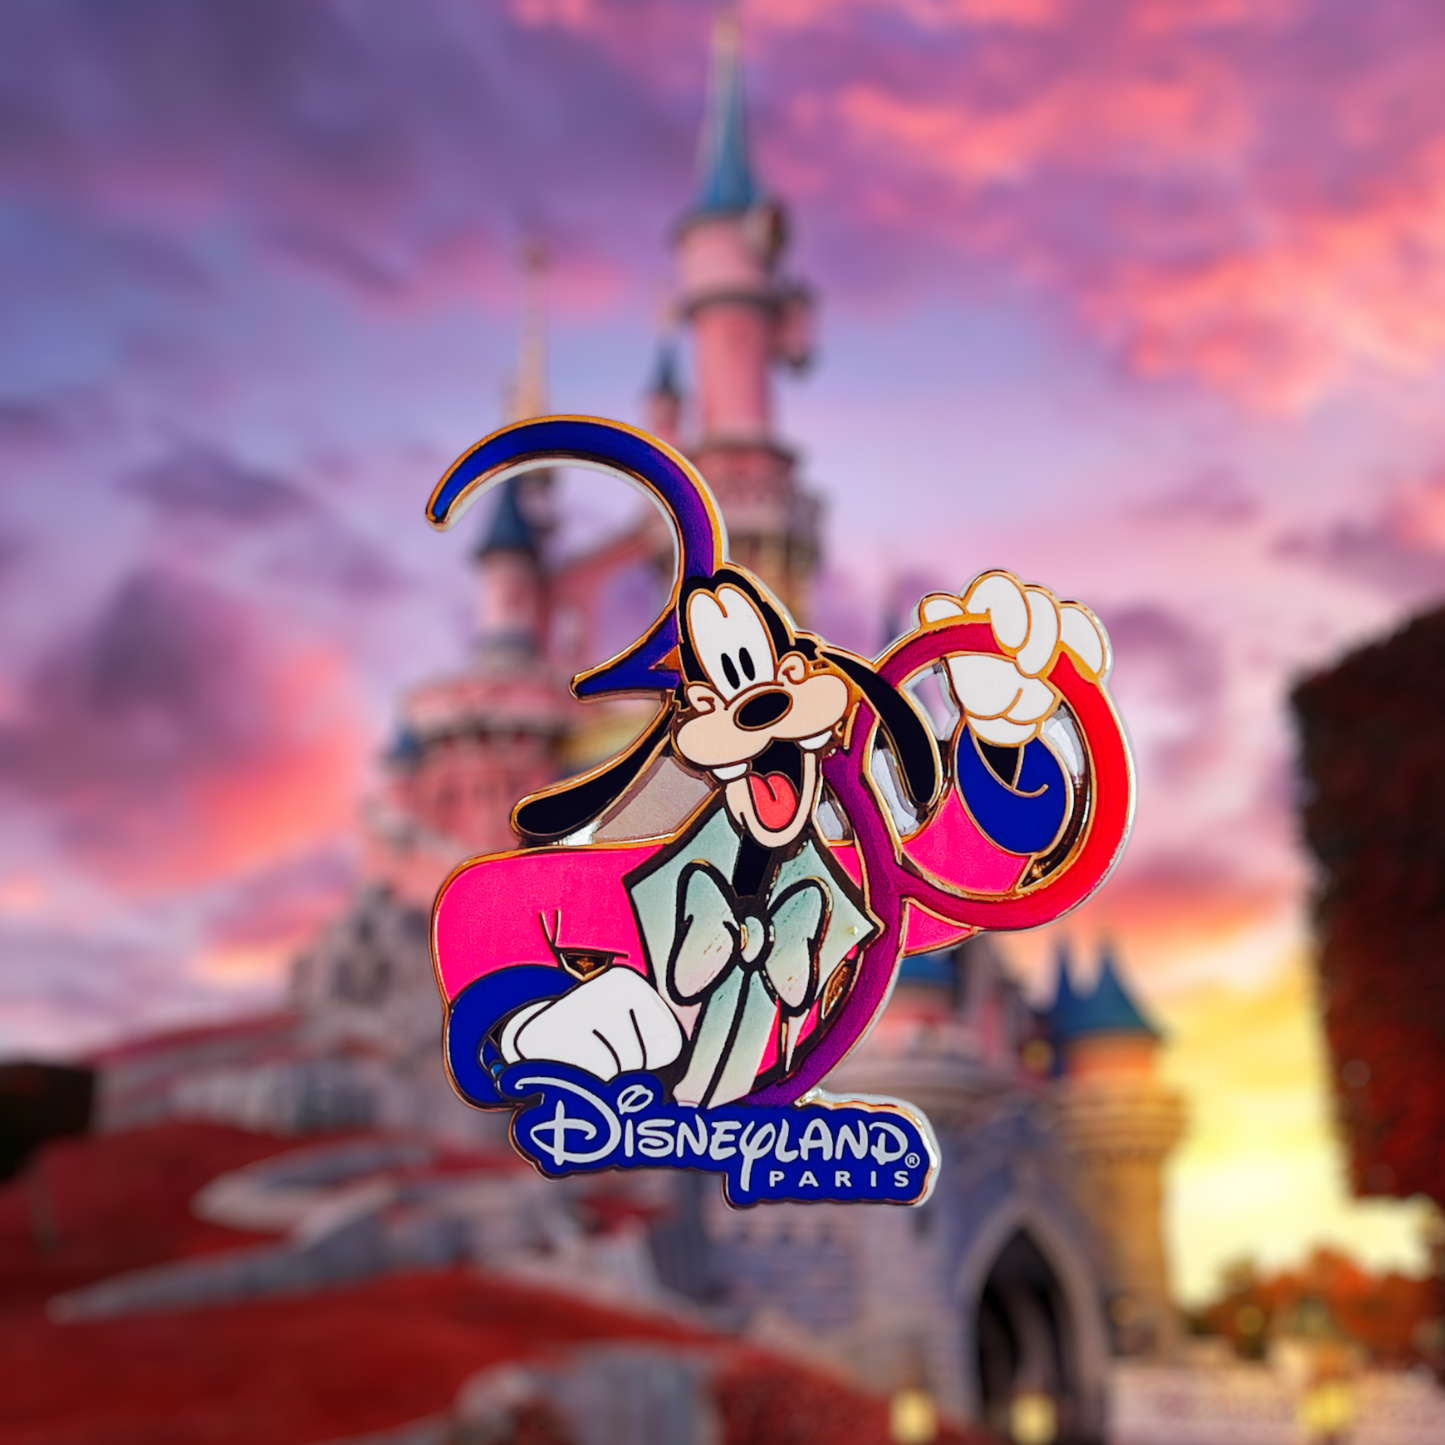 Disneyland Paris 30th Anniversary Goofy Pin